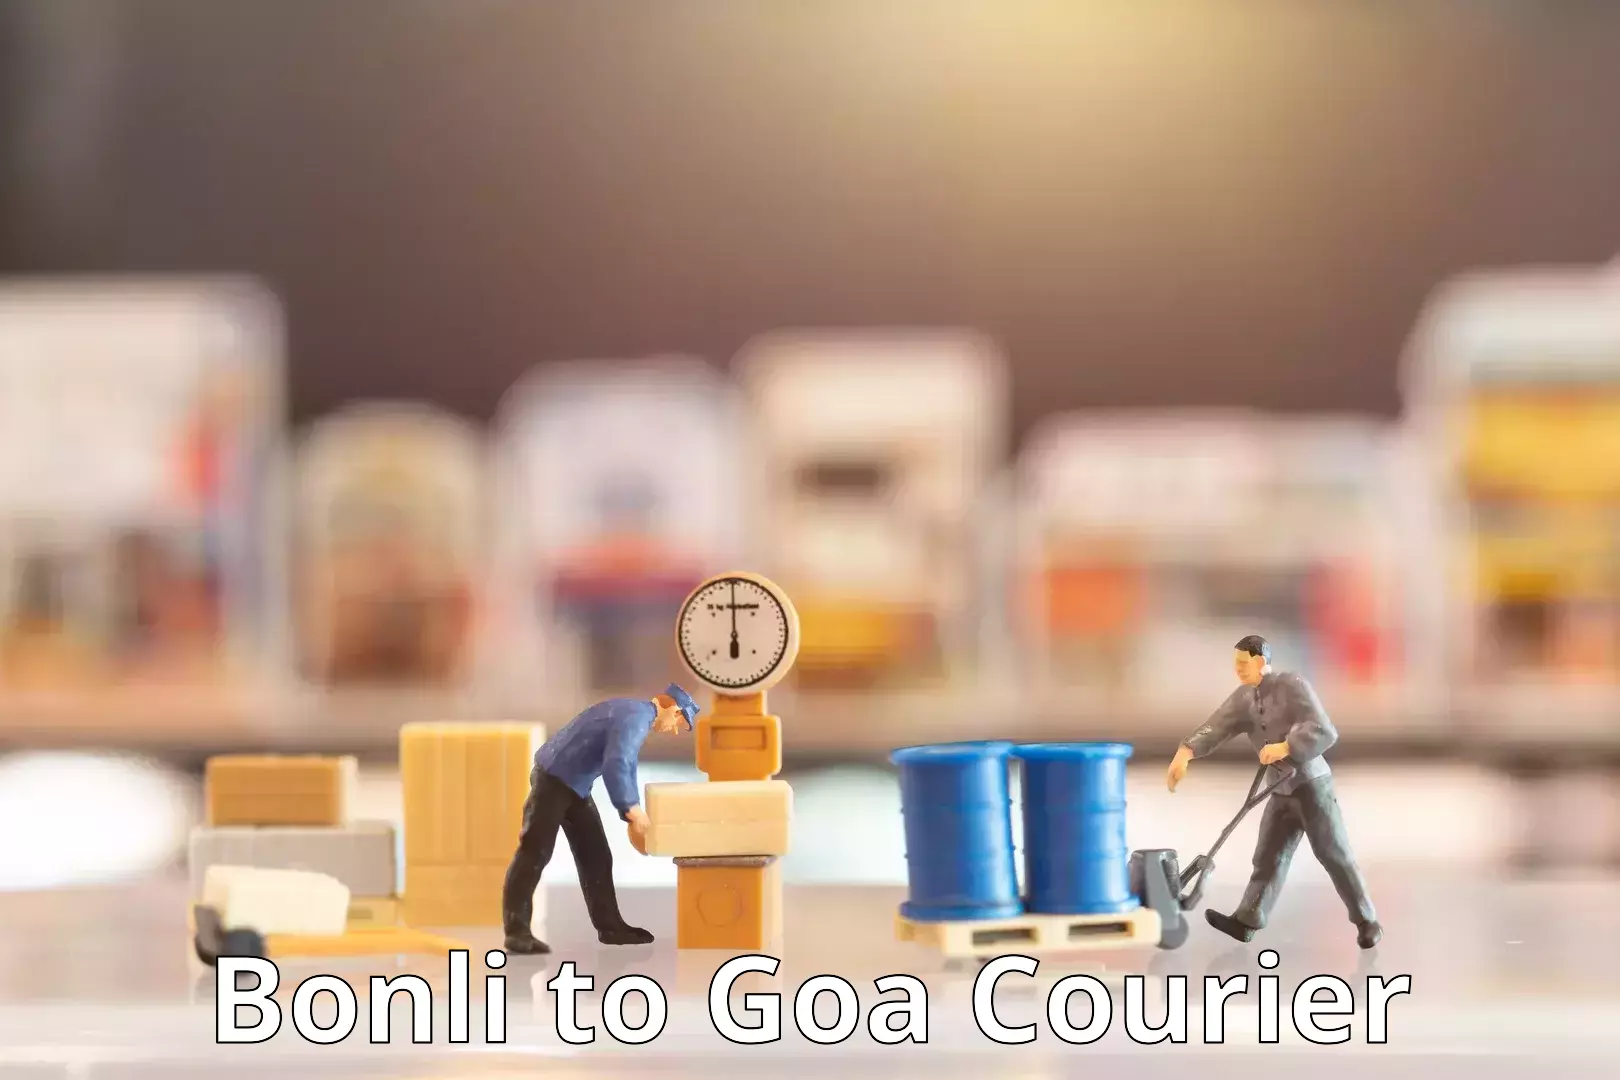 User-friendly delivery service Bonli to Goa